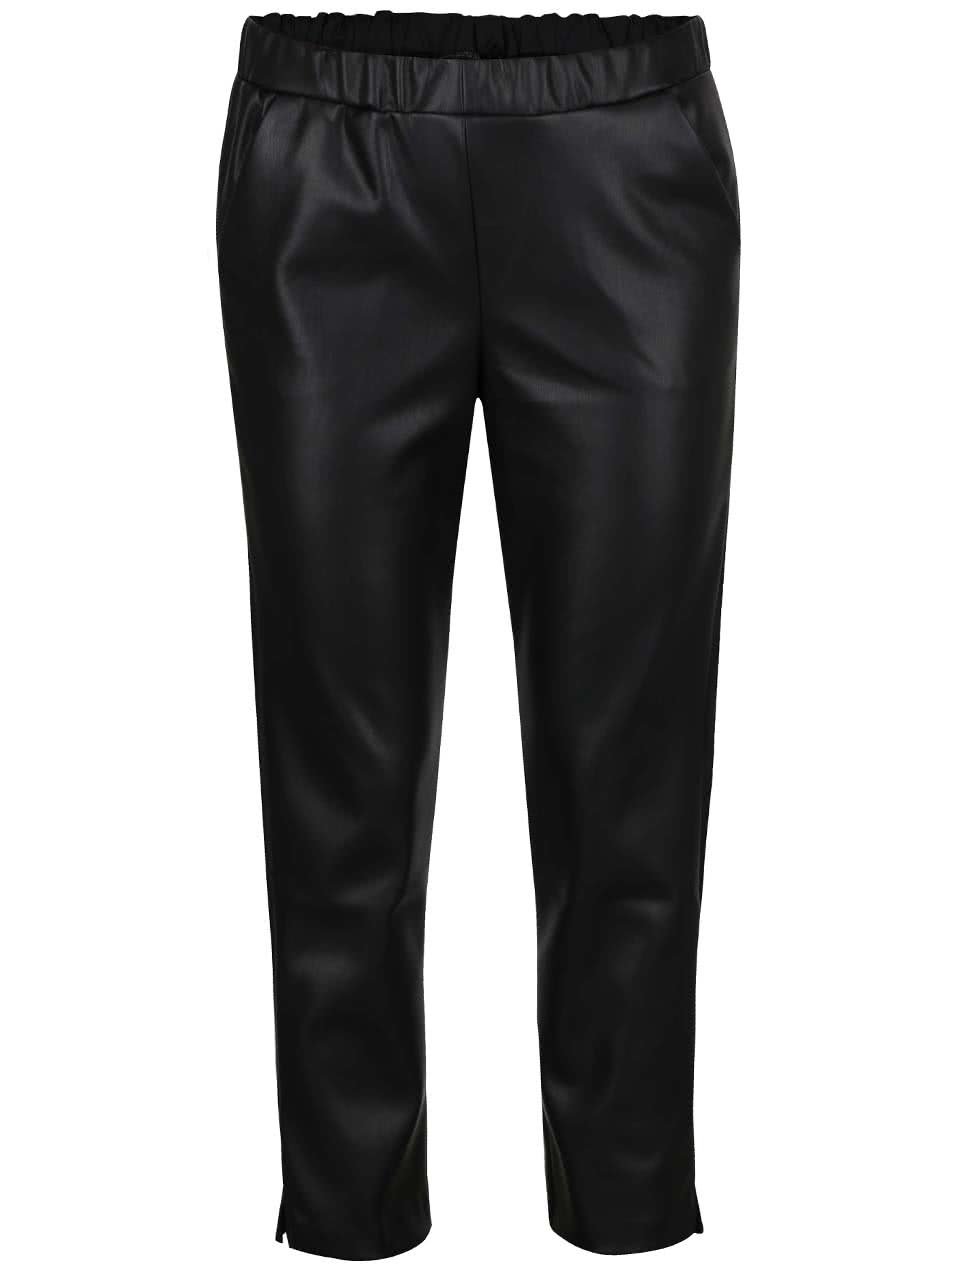 Černé koženkové kalhoty Miss Selfridge